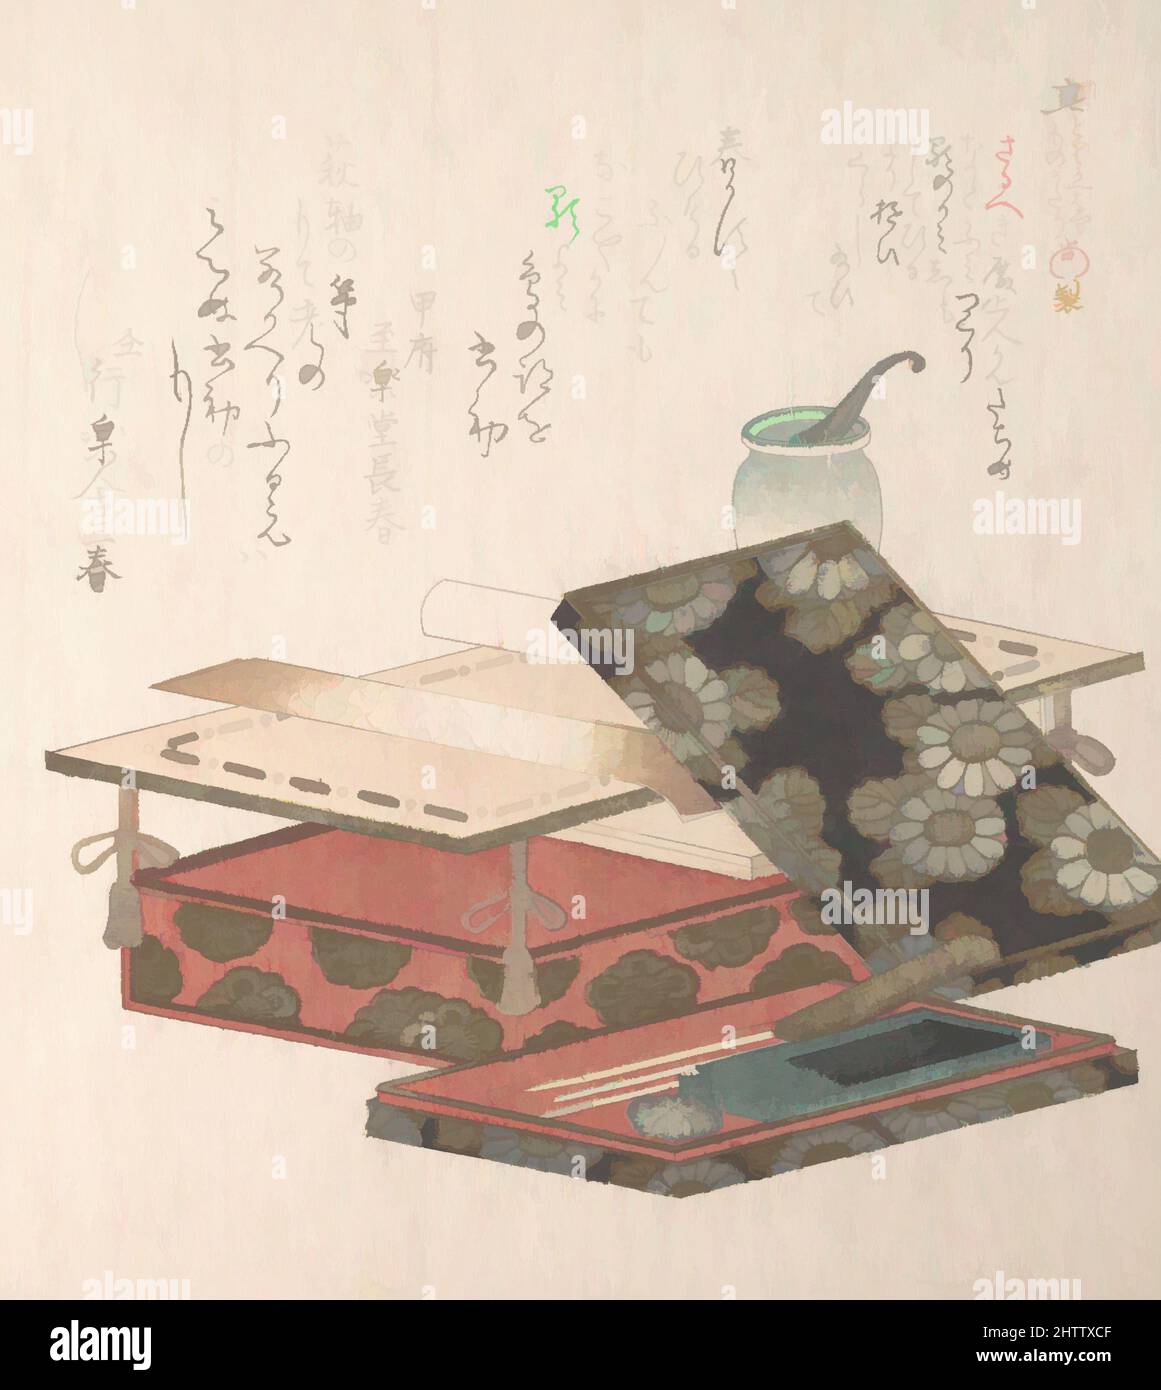 Art inspiré de la table et de l'écriture, époque Edo (1615–1868), 19th siècle, Japon, imprimé polychrome (surimono); encre et couleur sur papier, 8 3/16 x 7 1/8 po. (20,8 x 18,1 cm), Prints, Kubo Shunman (japonais, 1757–1820), les objets Lacquer sont souvent représentés sur des œuvres luxueuses, limitées, classiques modernisées par Artotop avec une touche de modernité. Formes, couleur et valeur, impact visuel accrocheur sur l'art émotions par la liberté d'œuvres d'art d'une manière contemporaine. Un message intemporel qui cherche une nouvelle direction créative. Artistes qui se tournent vers le support numérique et créent le NFT Artotop Banque D'Images